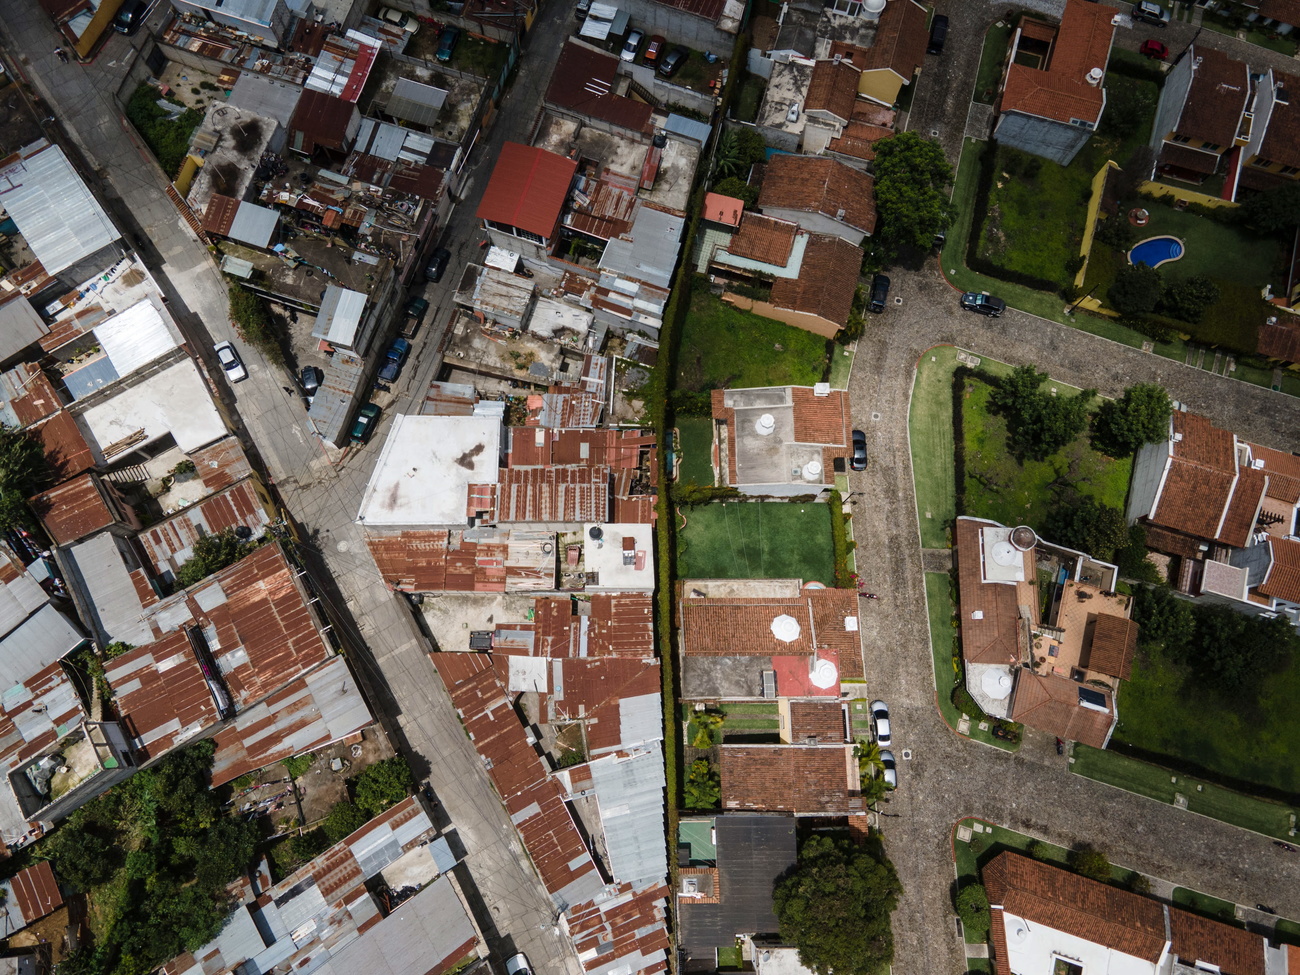 Vista aérea de casas ricas e pobres, lado a lado